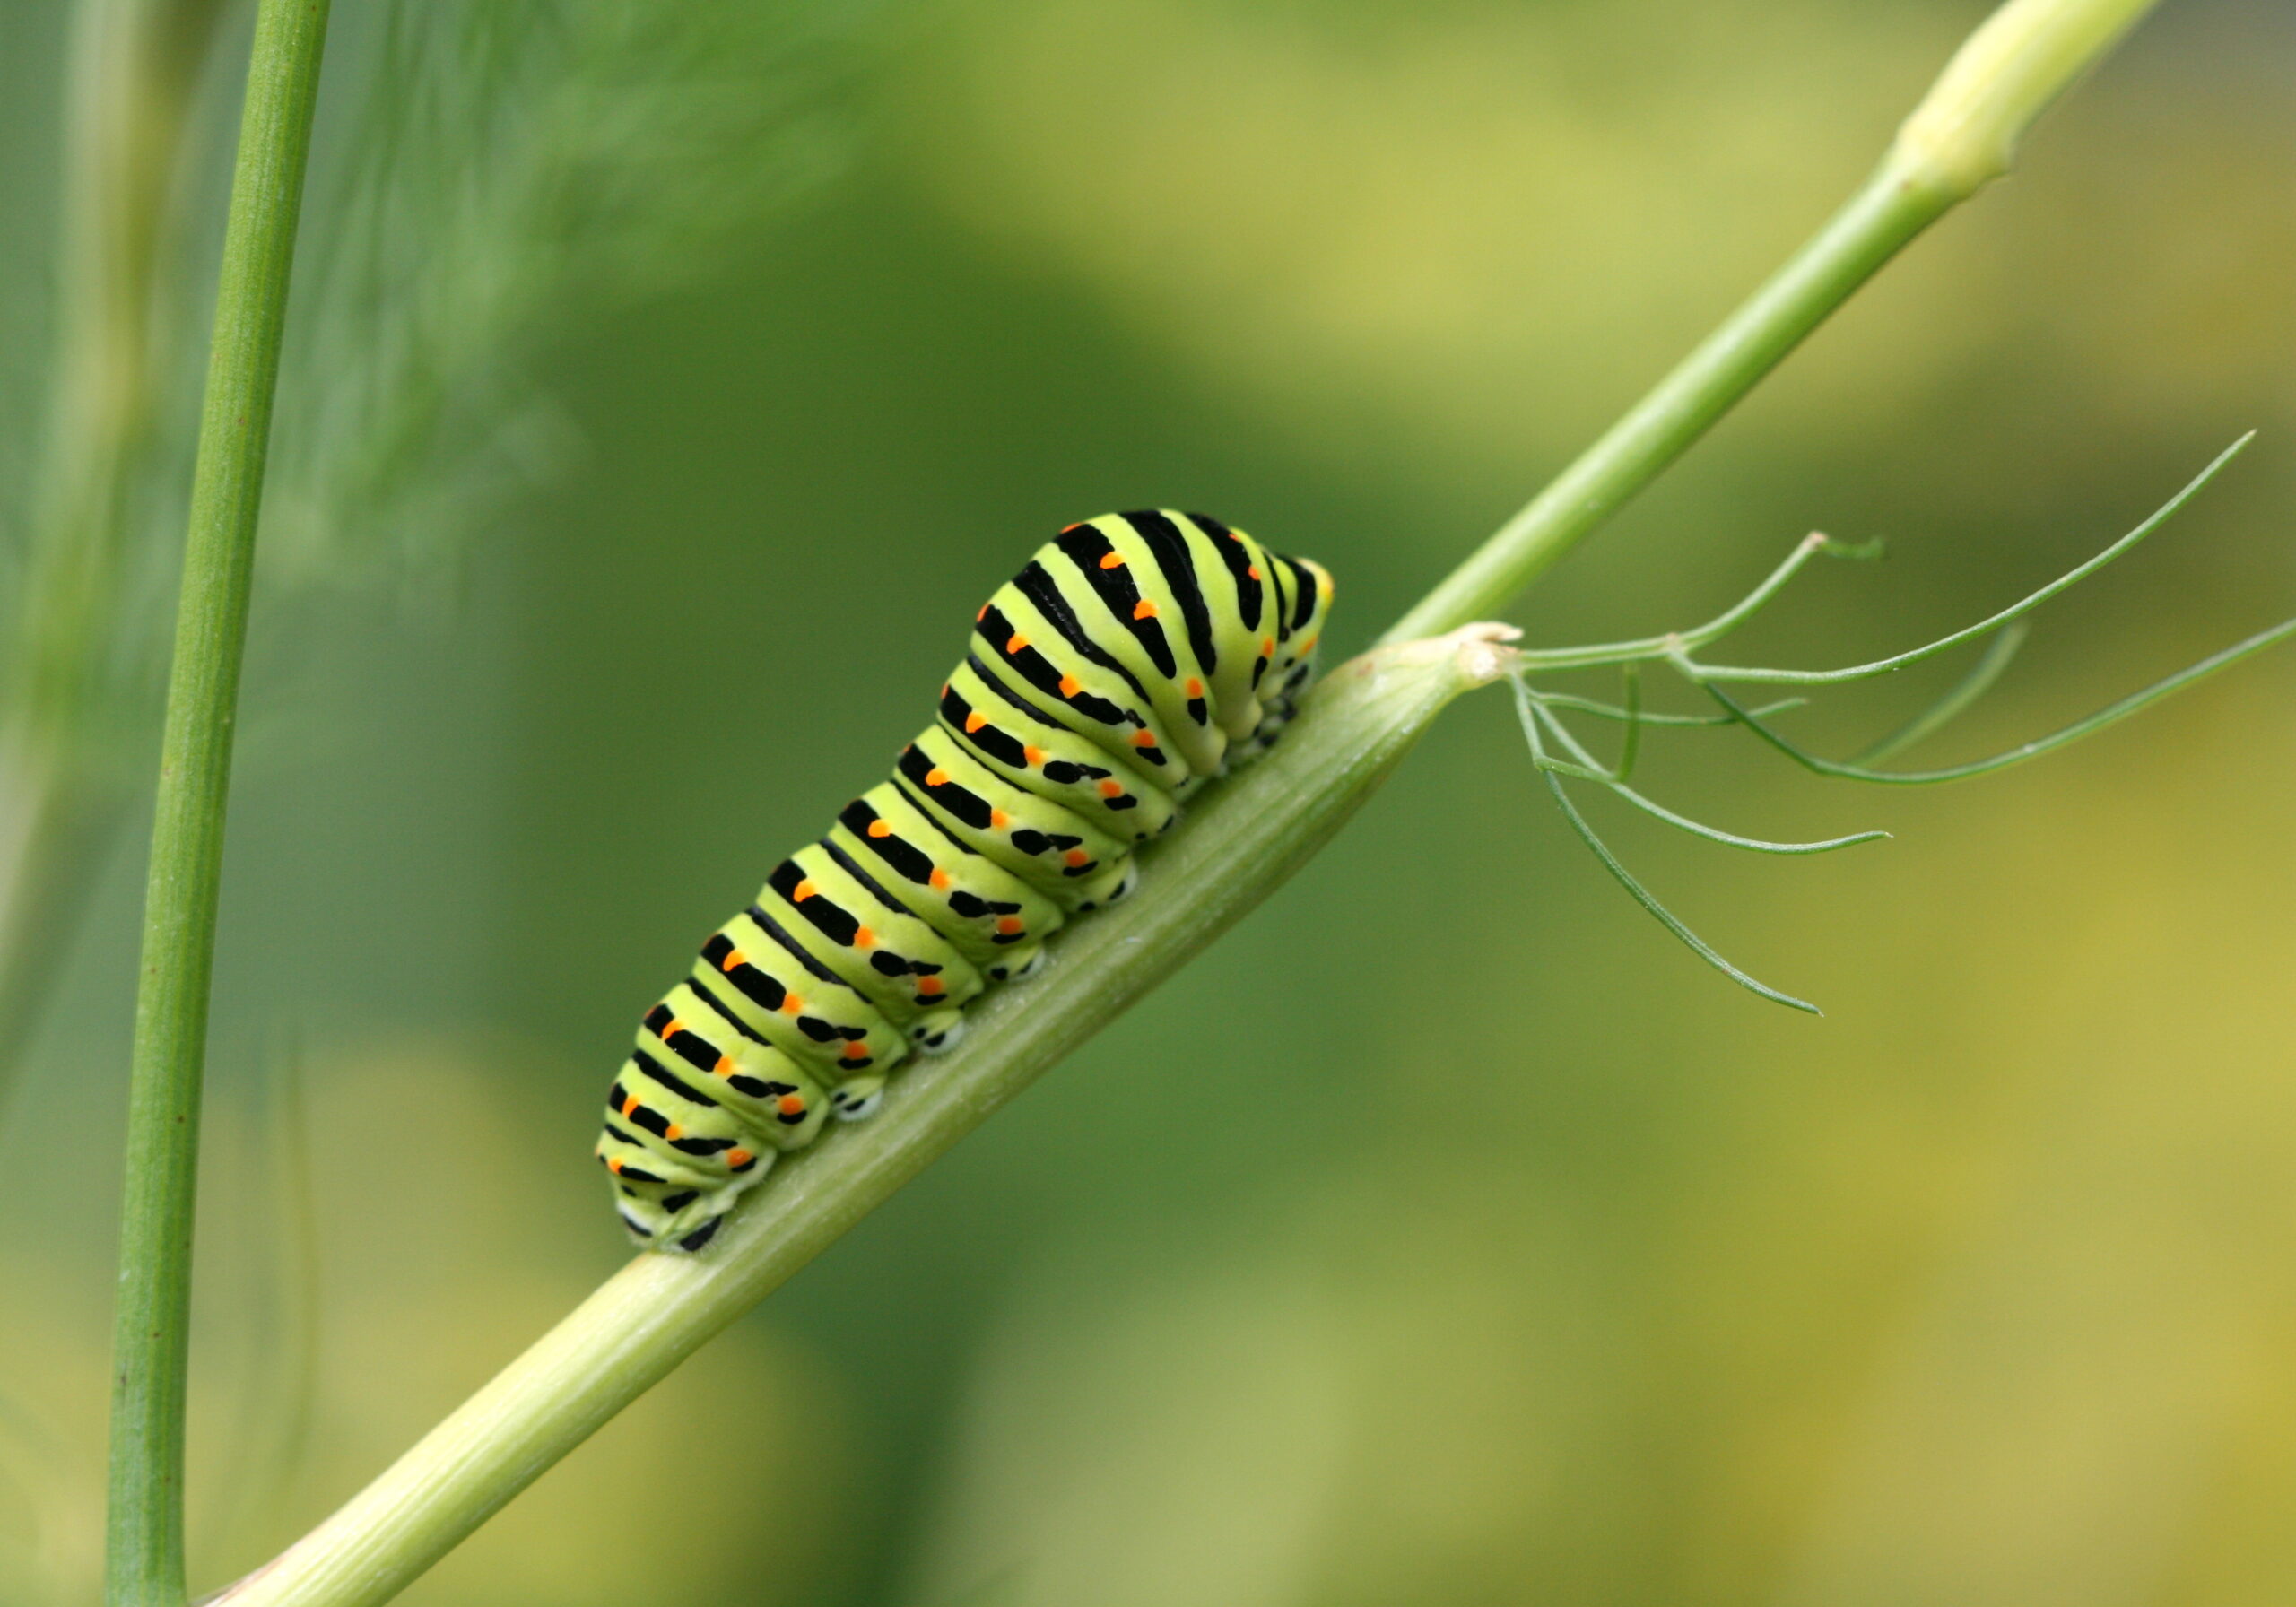 Caterpillar on a stem